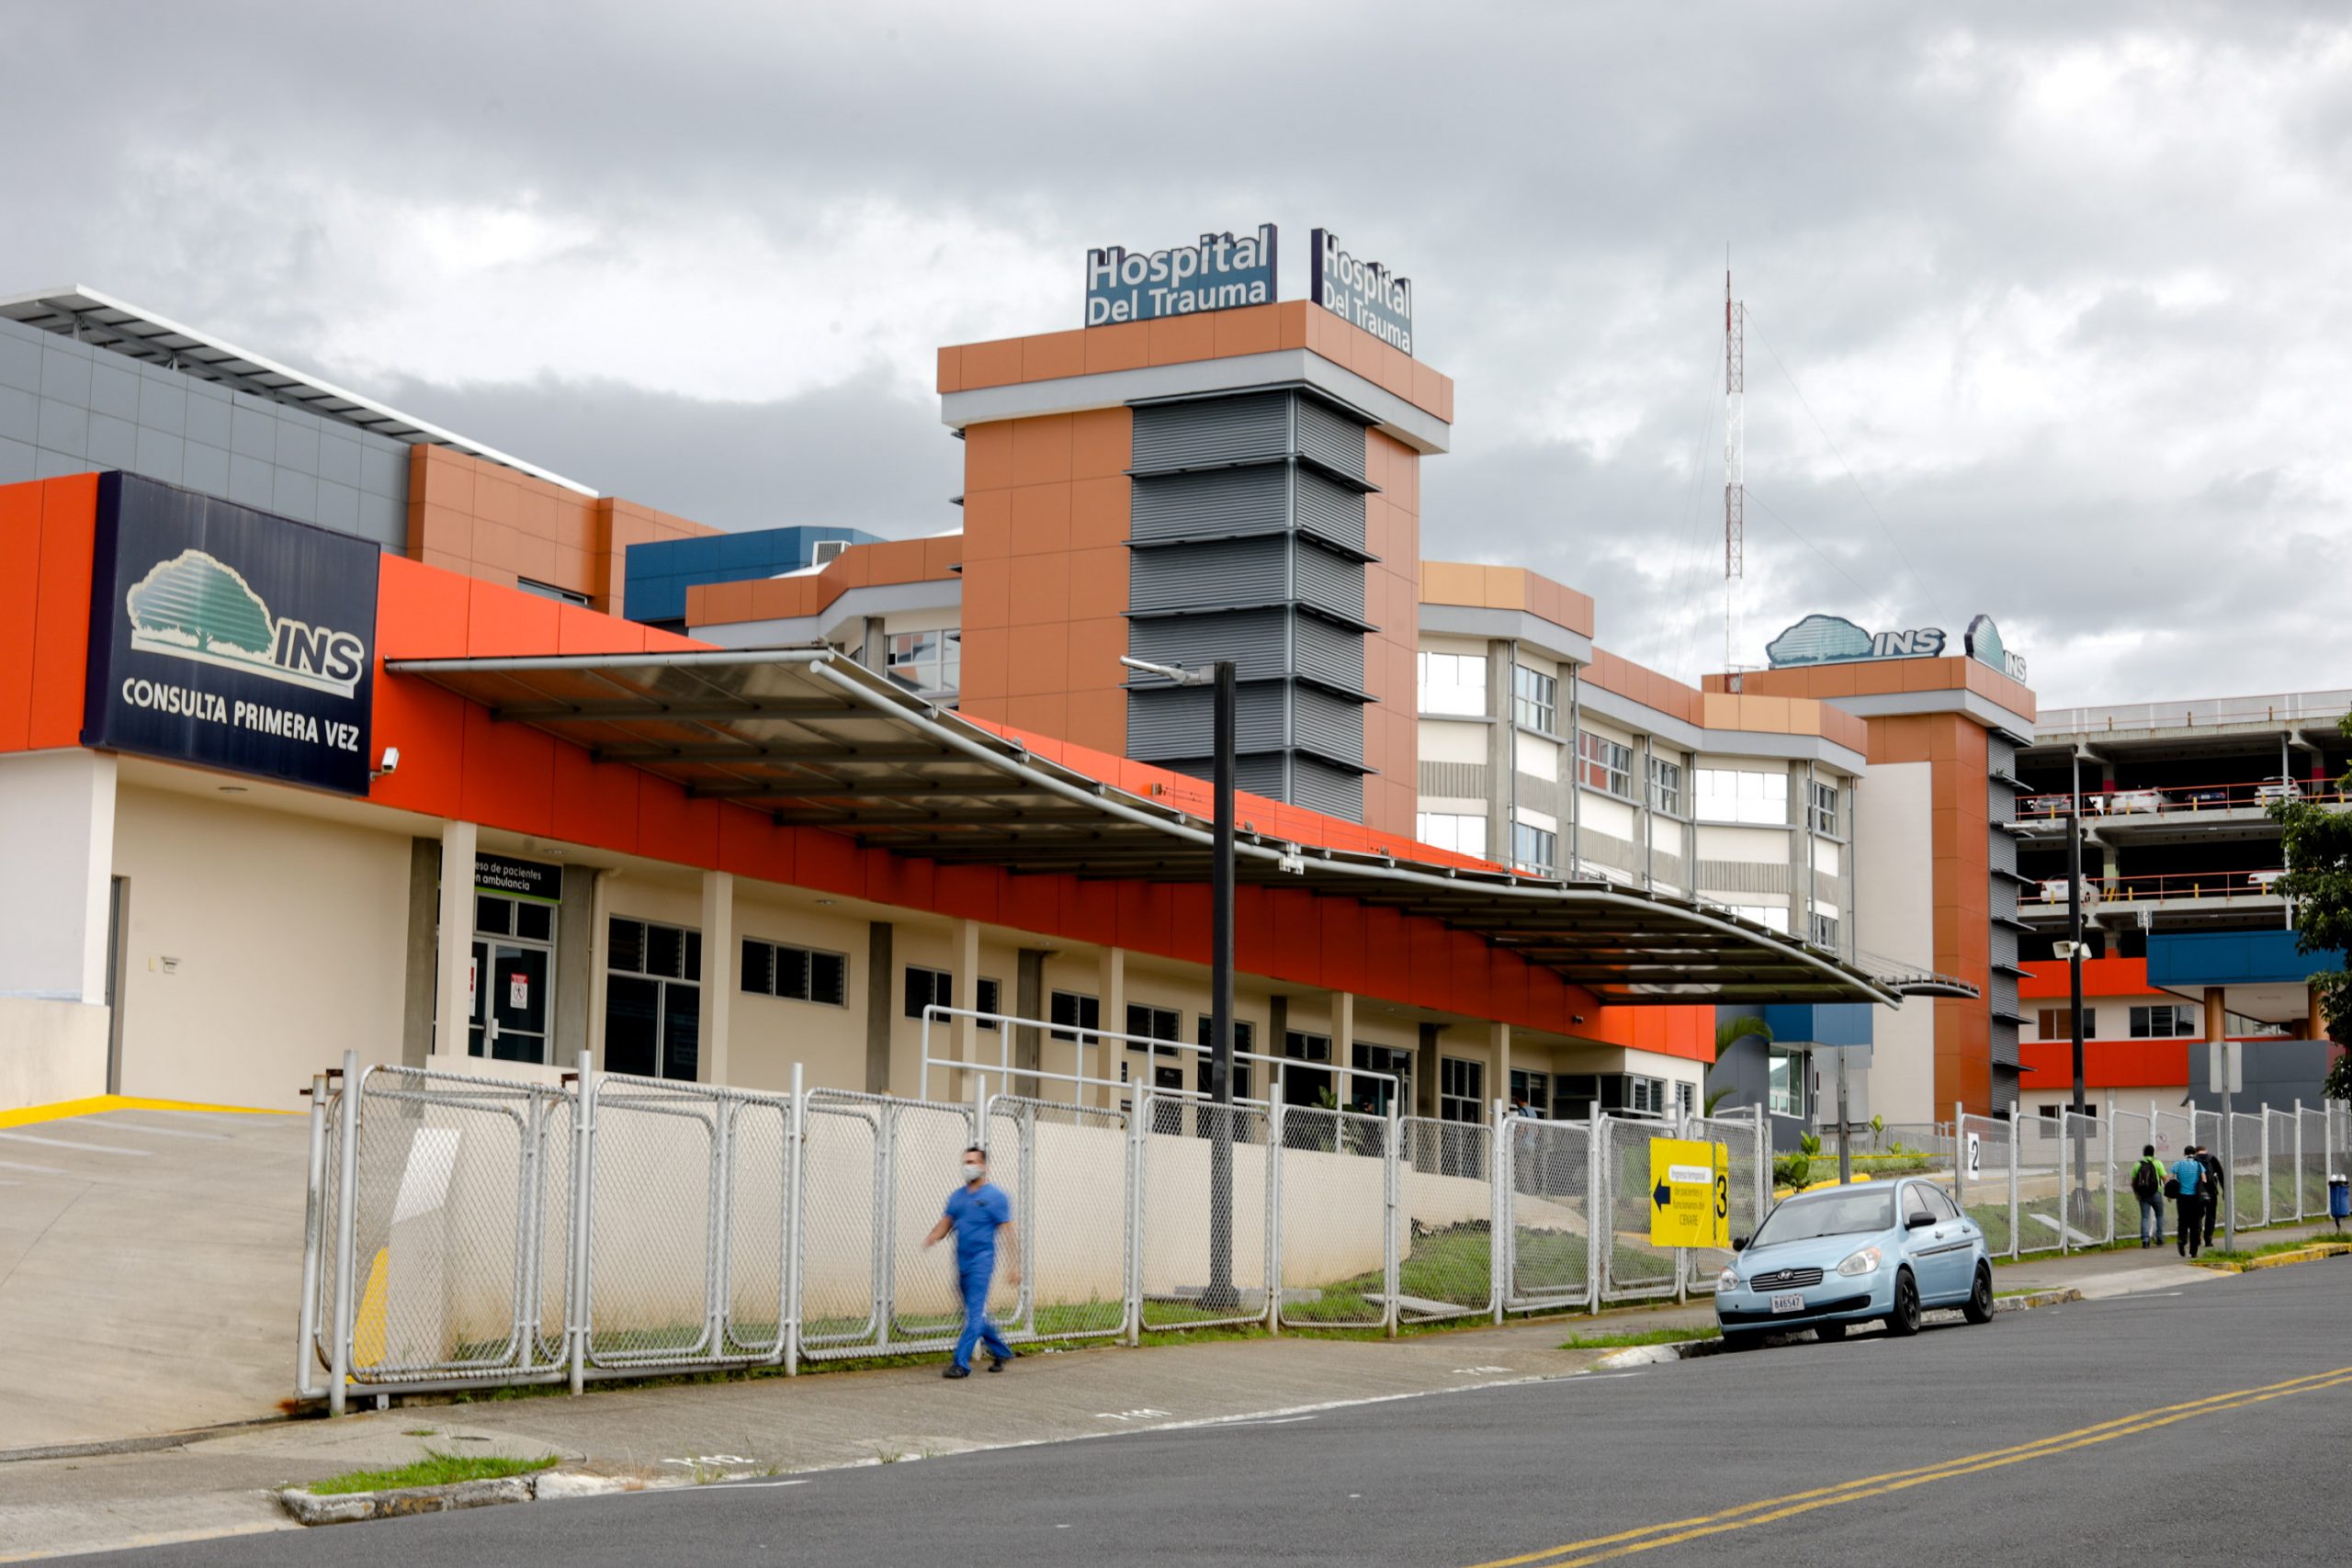 INS reporta disminución en asistencia a consultas de emergencia del 20% en Hospital del Trauma y lo atribuye a presas en La Uruca